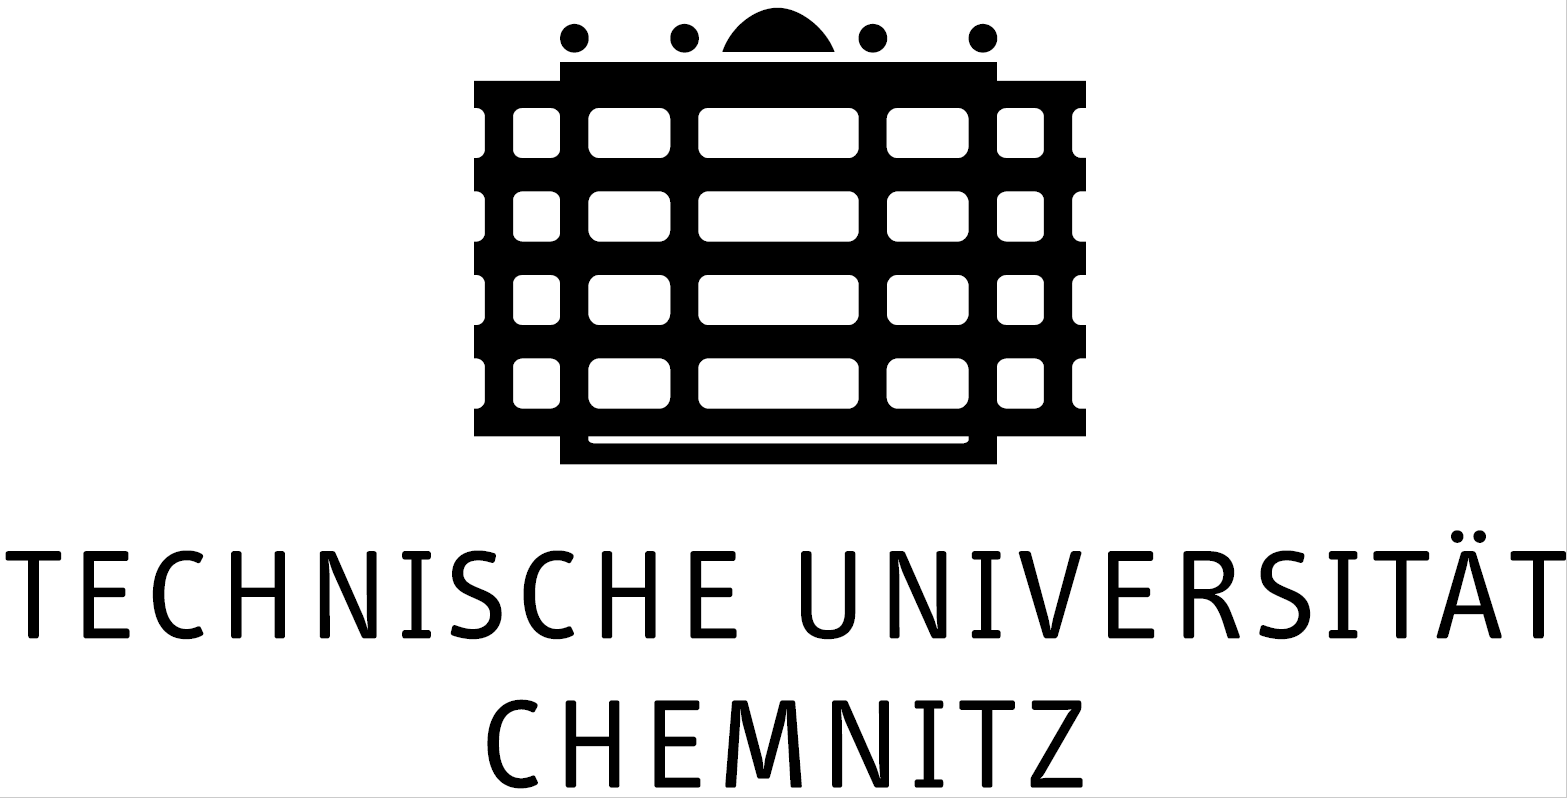 Technische Universität Chemnitz (Germany)